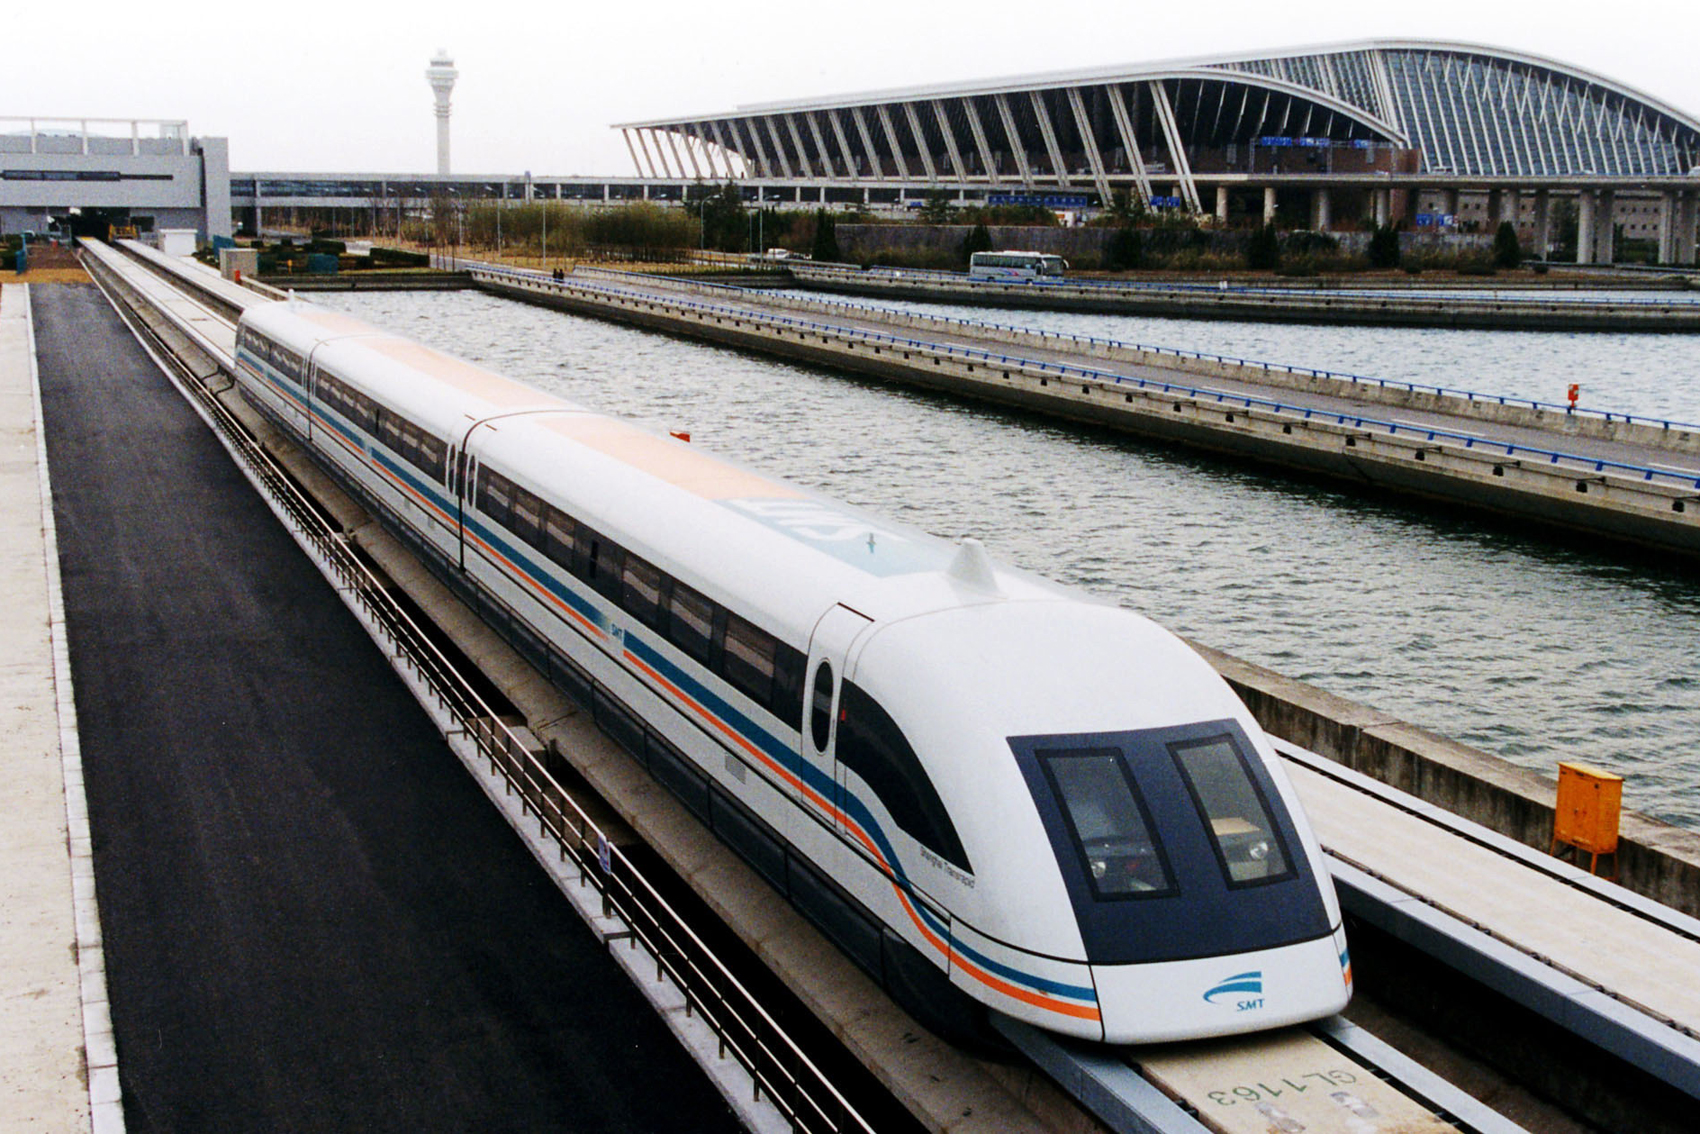 transrapid Shanghai Maglev Train самые быстрые поезда